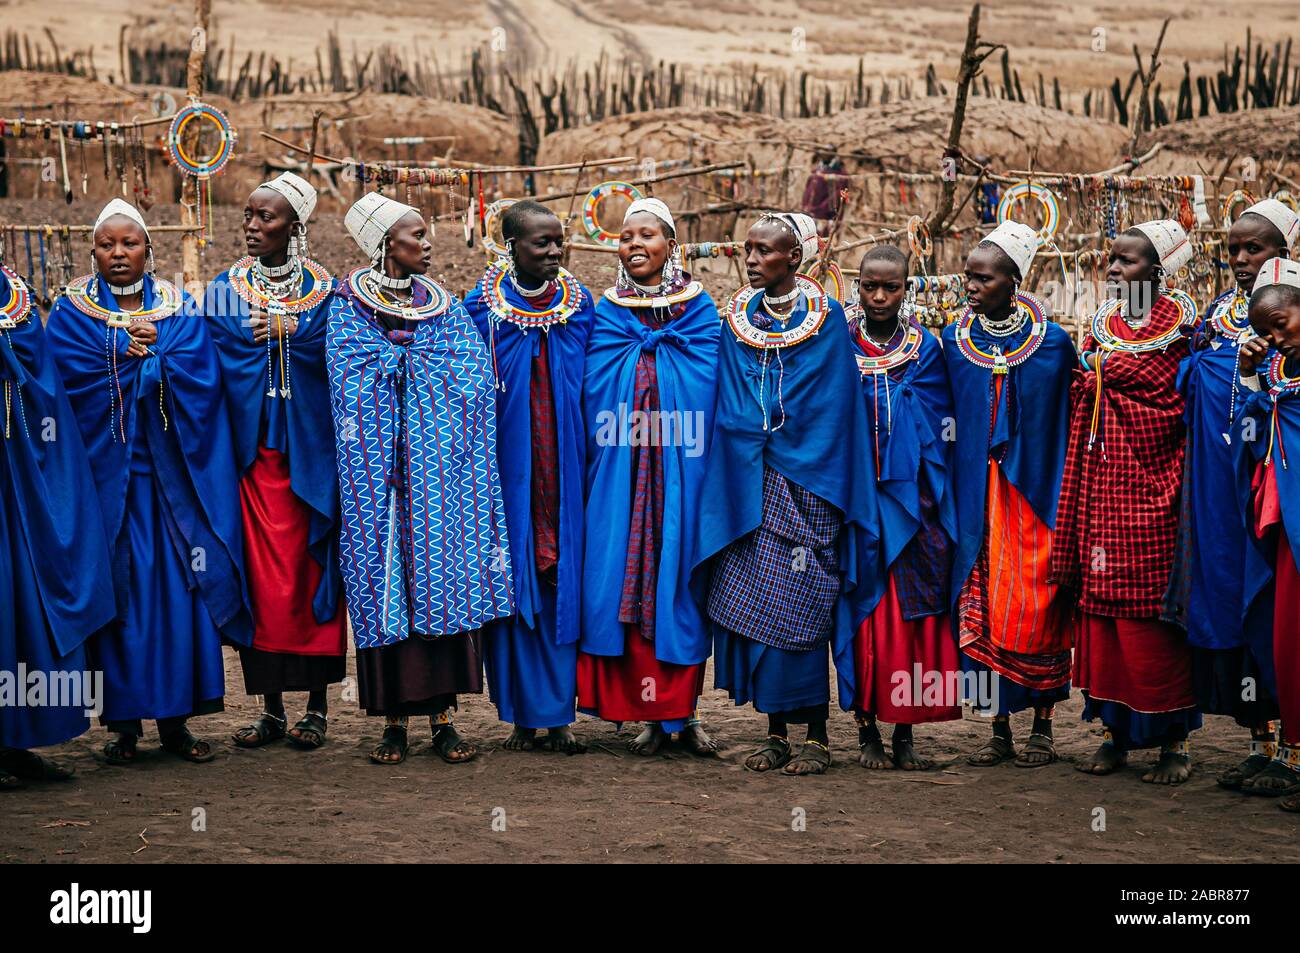 JUN 24, 2011 Serengeti Tanzania - Gruppo di Masai africani o tribù Masai donna in panno blu indossando testiera e cordoni di pietra ornamenti. Il gruppo etnico Foto Stock